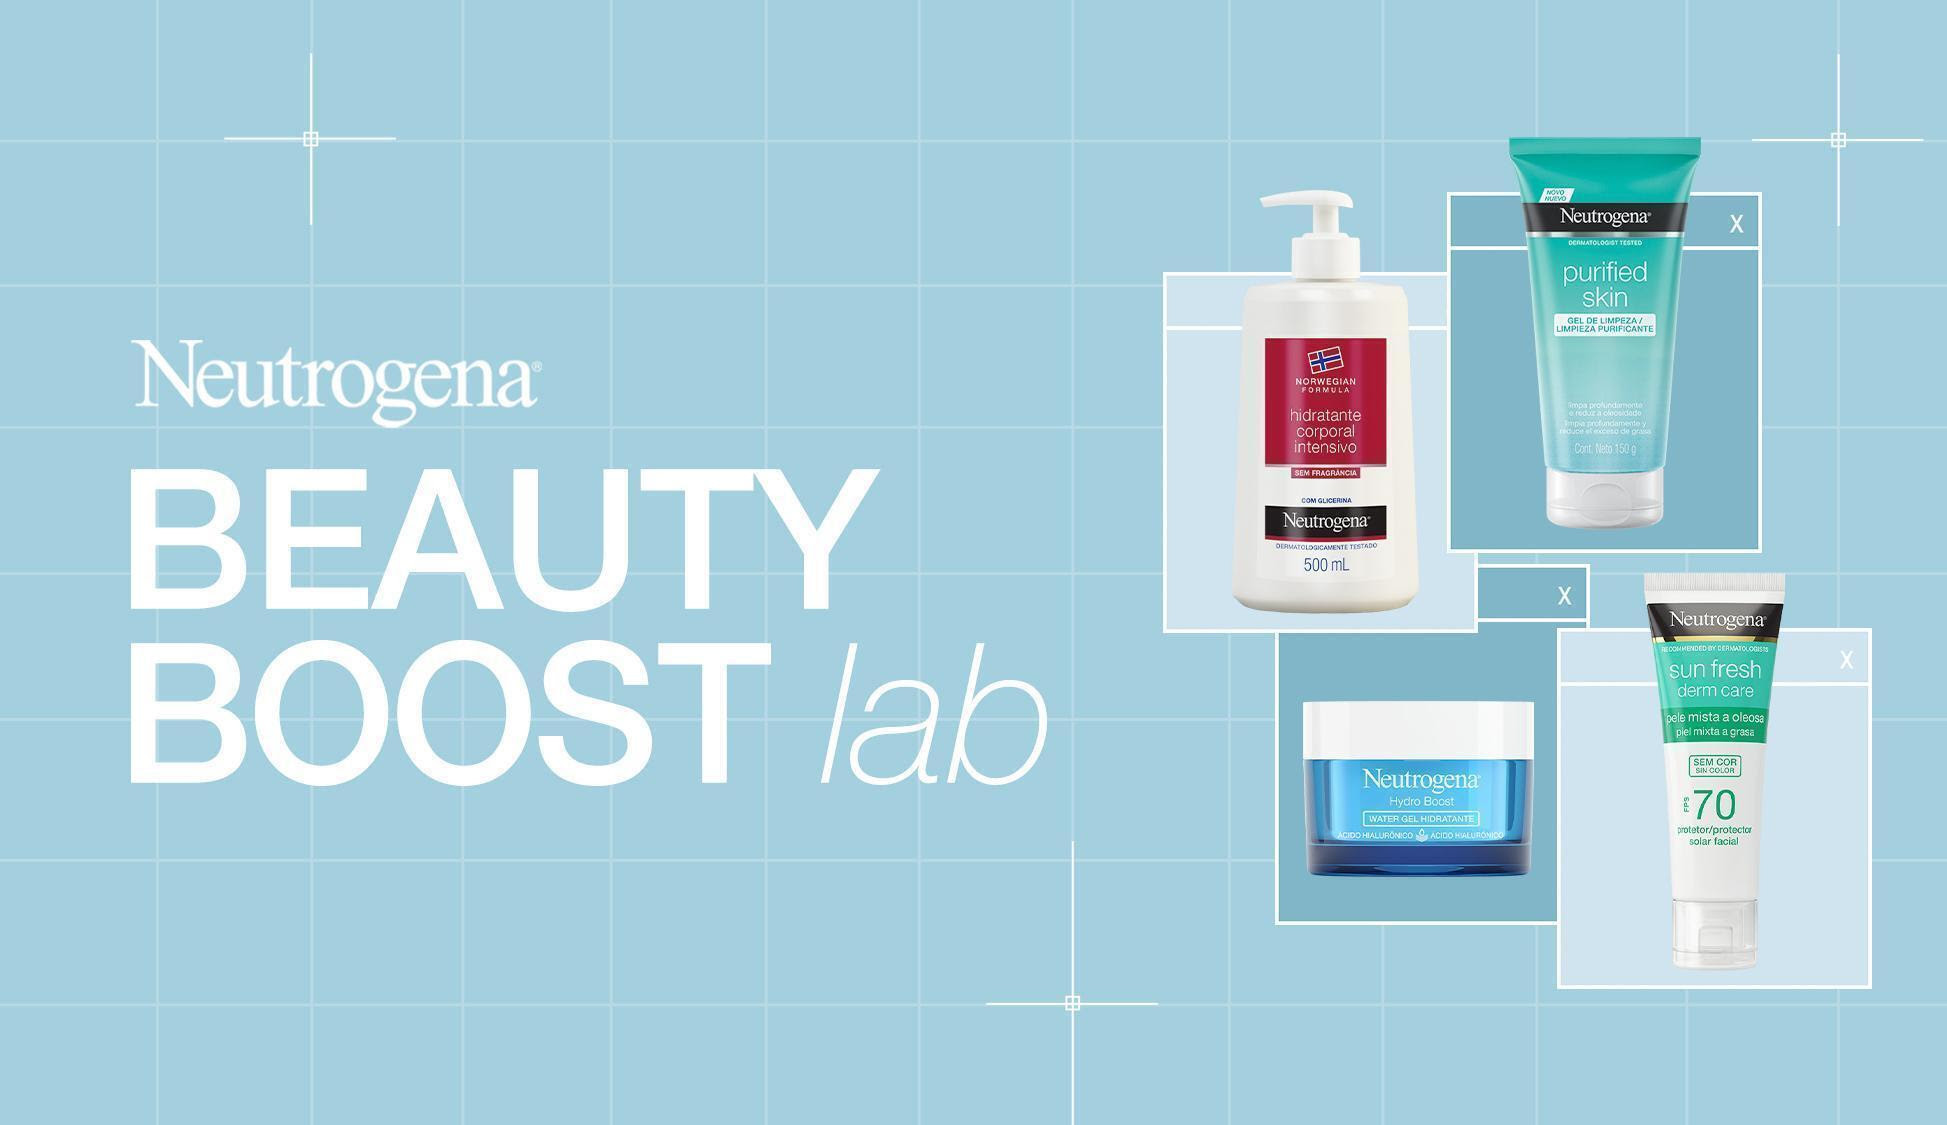 Neutrogena lança Semana Beauty Boost